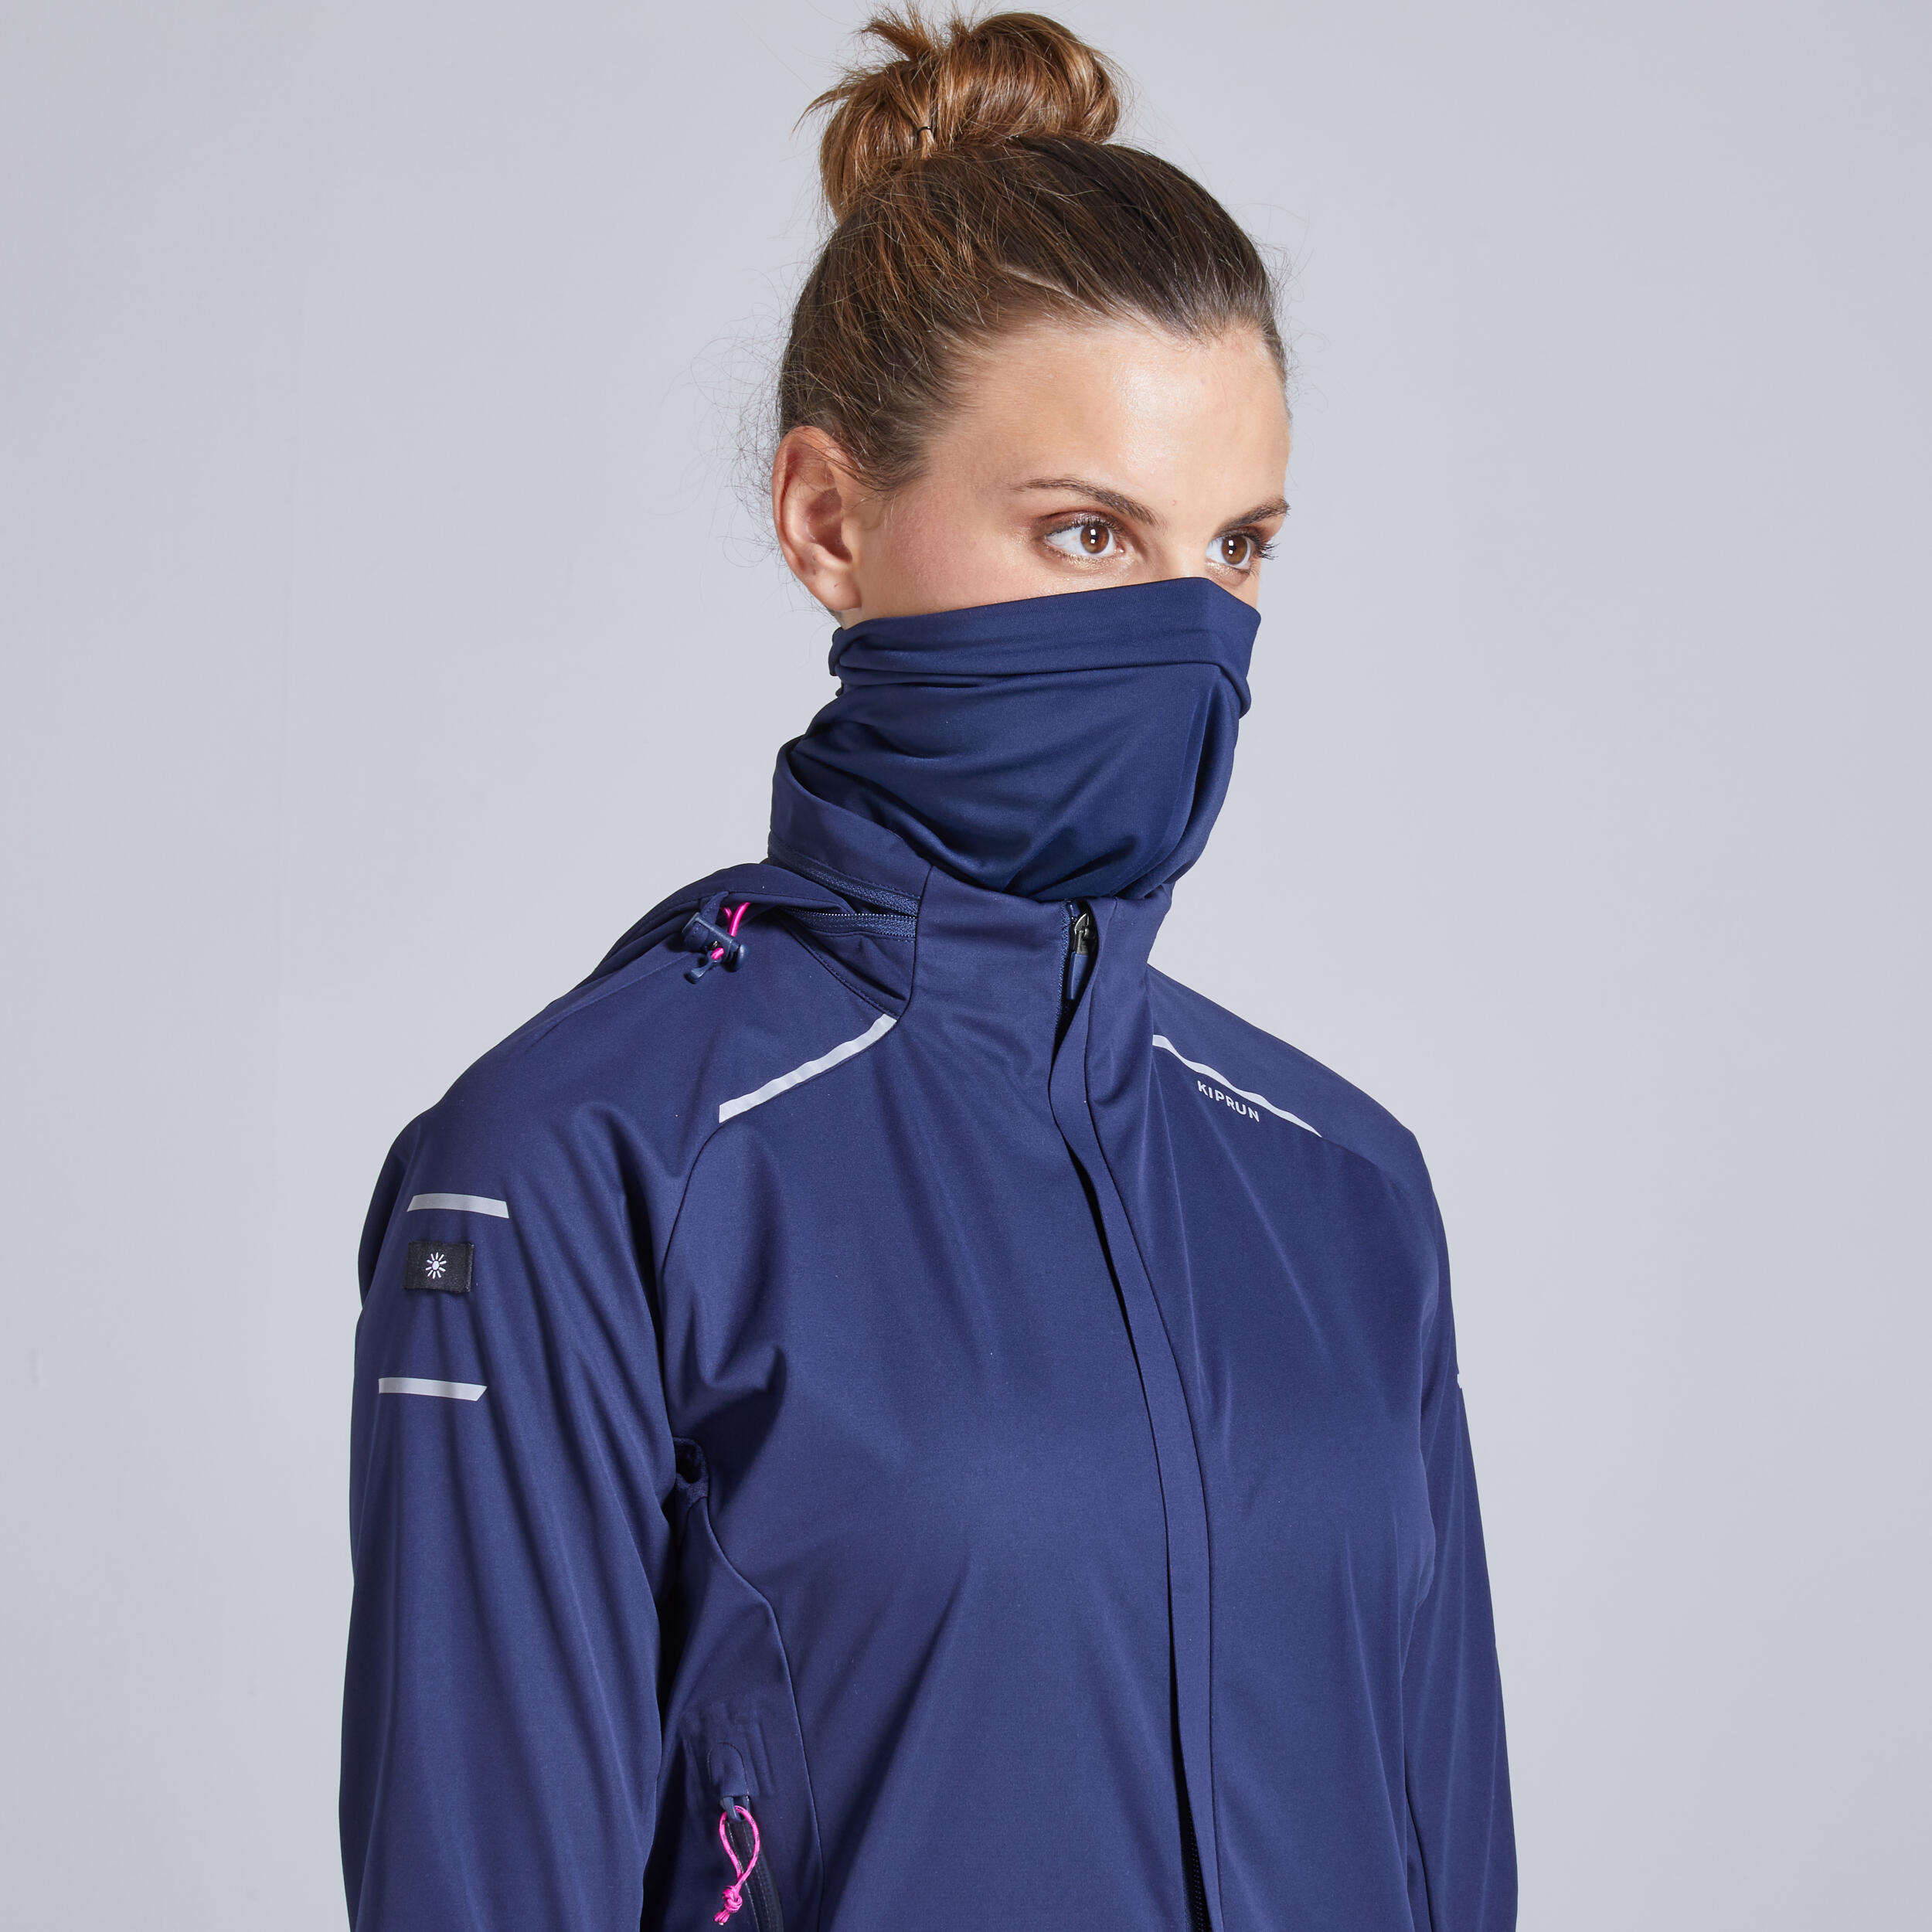 Warm Regul Women's Winter Running Windproof Water Repellent Jacket - navy 8/12